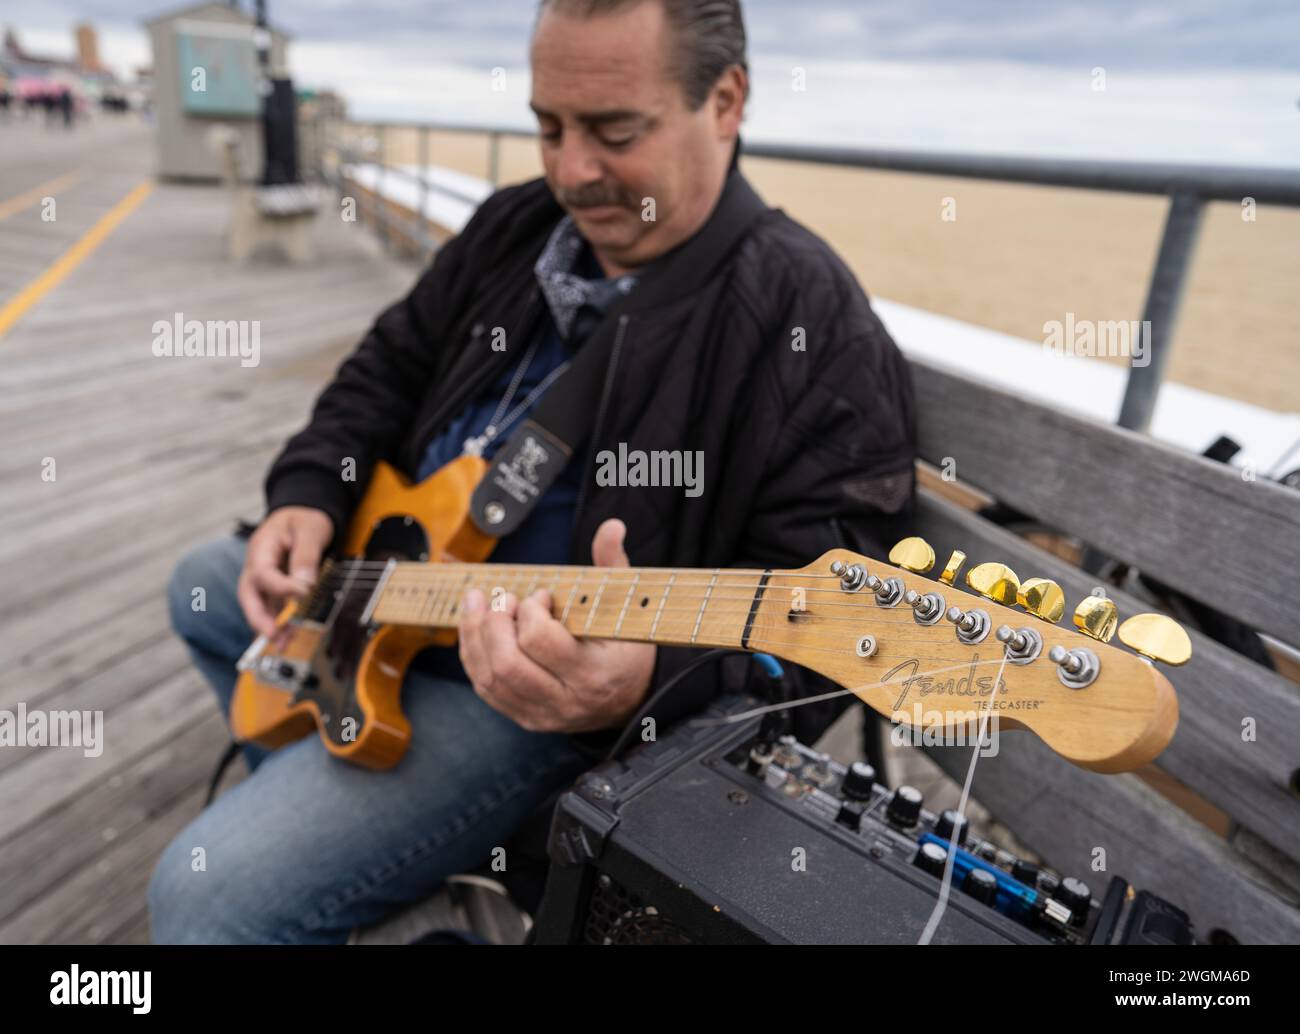 Harmoniert mit dem Rhythmus am Meer: Ein Mann spielt eine Fender-Gitarre auf der Promenade des Asbury Park, wo Musik auf die Meeresbrise trifft. Stockfoto